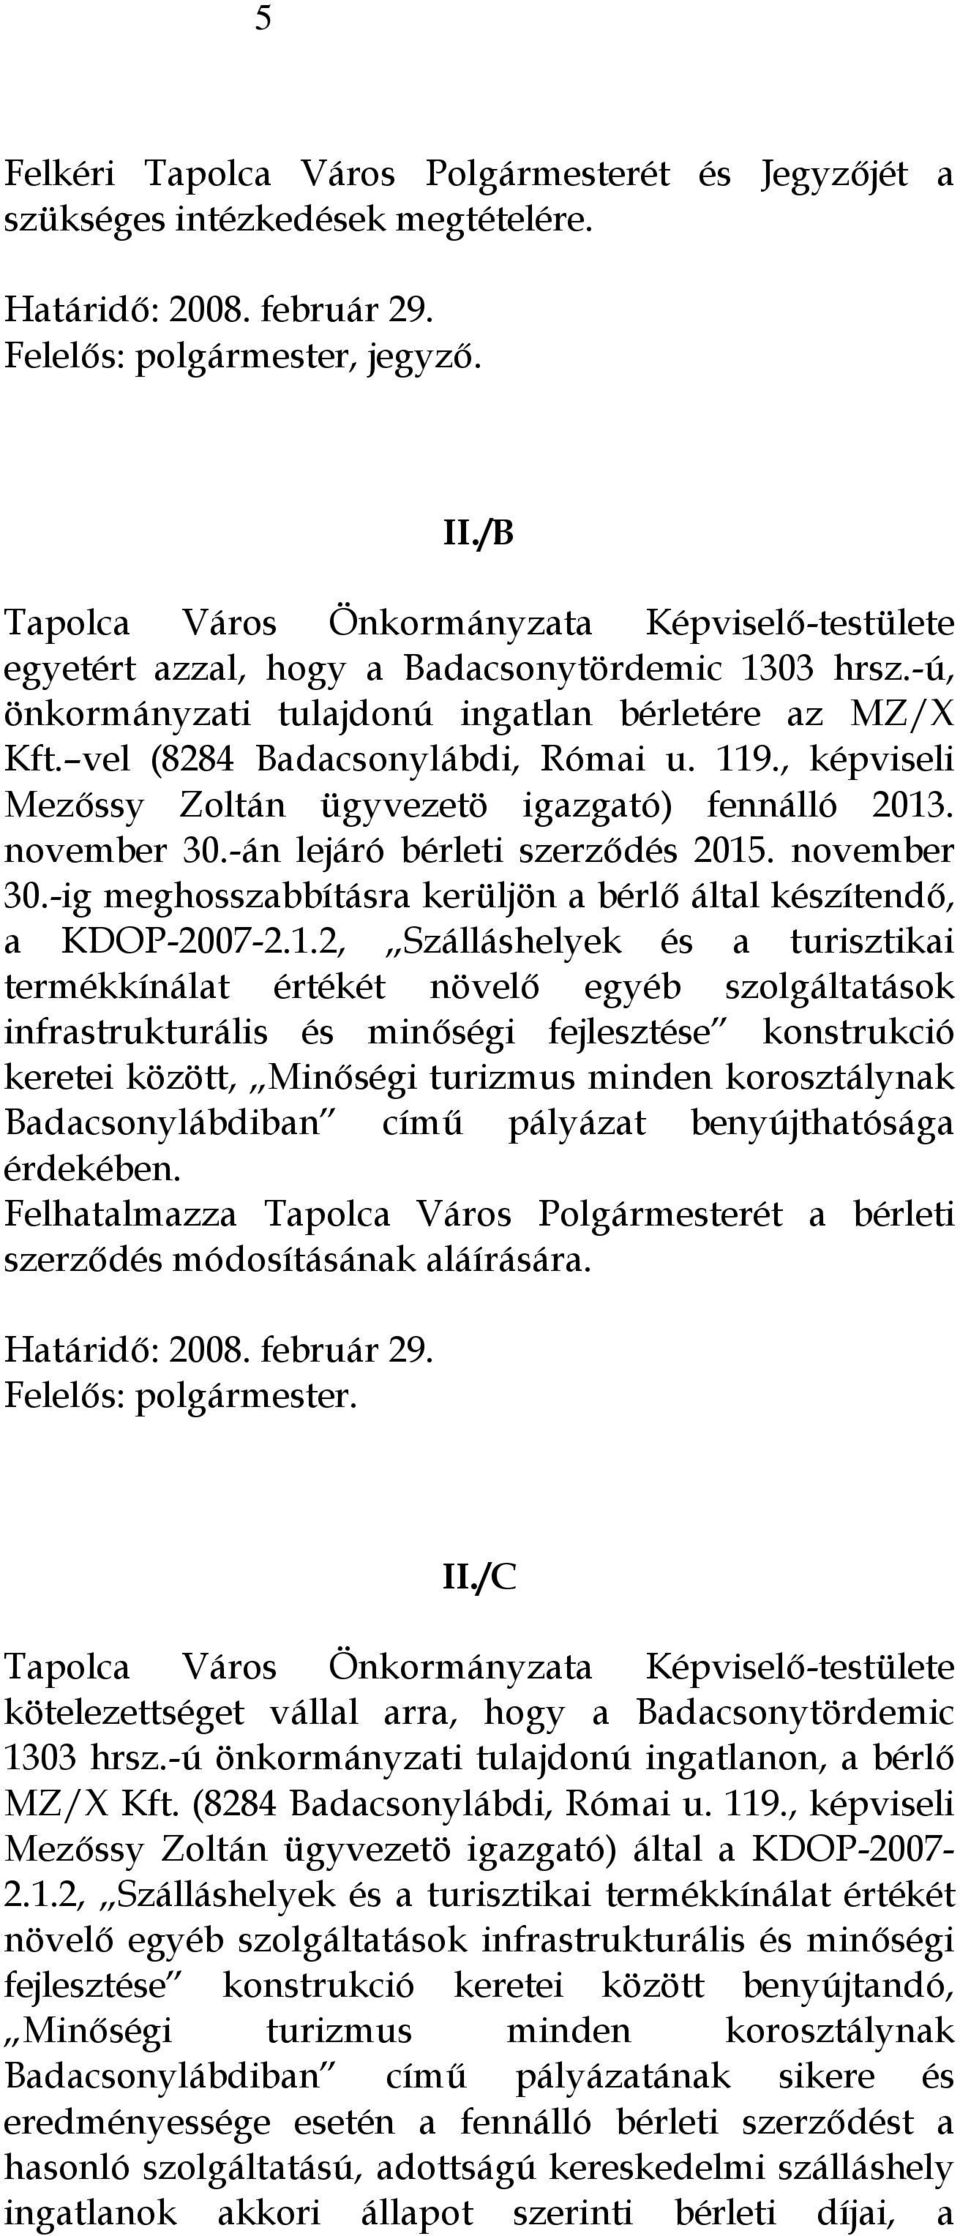 119., képviseli Mezőssy Zoltán ügyvezetö igazgató) fennálló 2013. november 30.-án lejáró bérleti szerződés 2015. november 30.-ig meghosszabbításra kerüljön a bérlő által készítendő, a